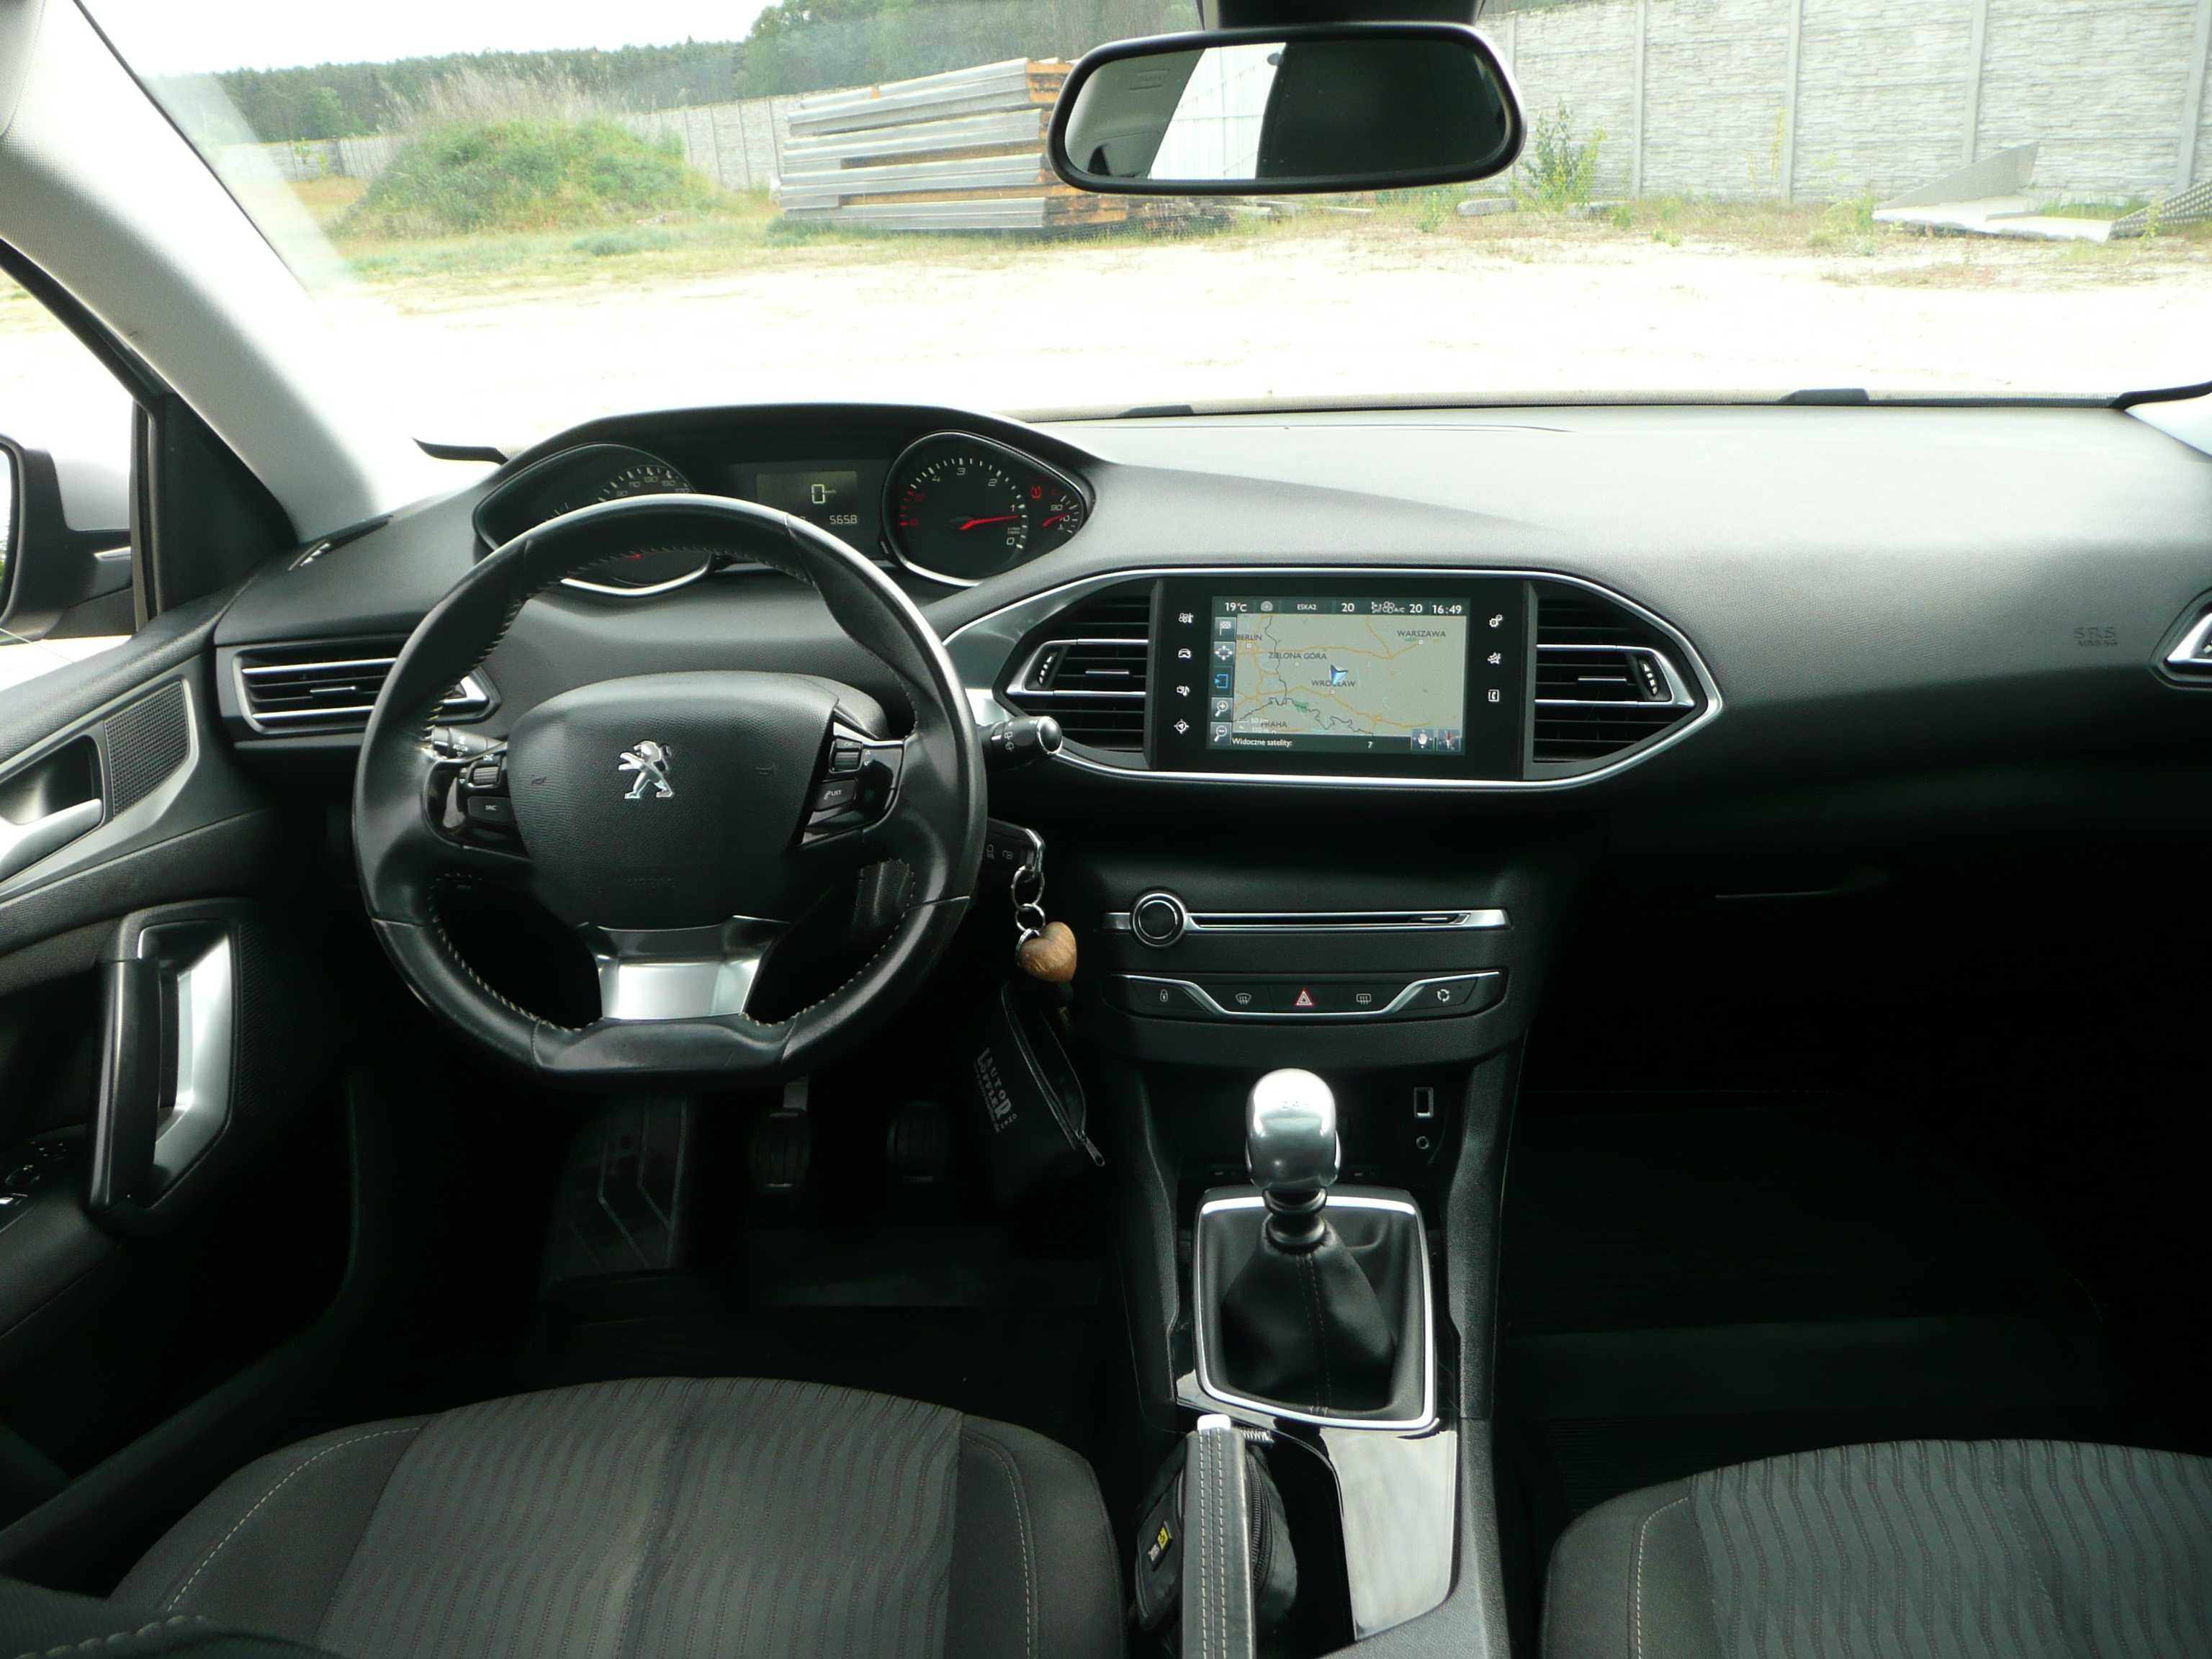 Peugeot 308 1.6HDI 120 KM  2015rok  panorama